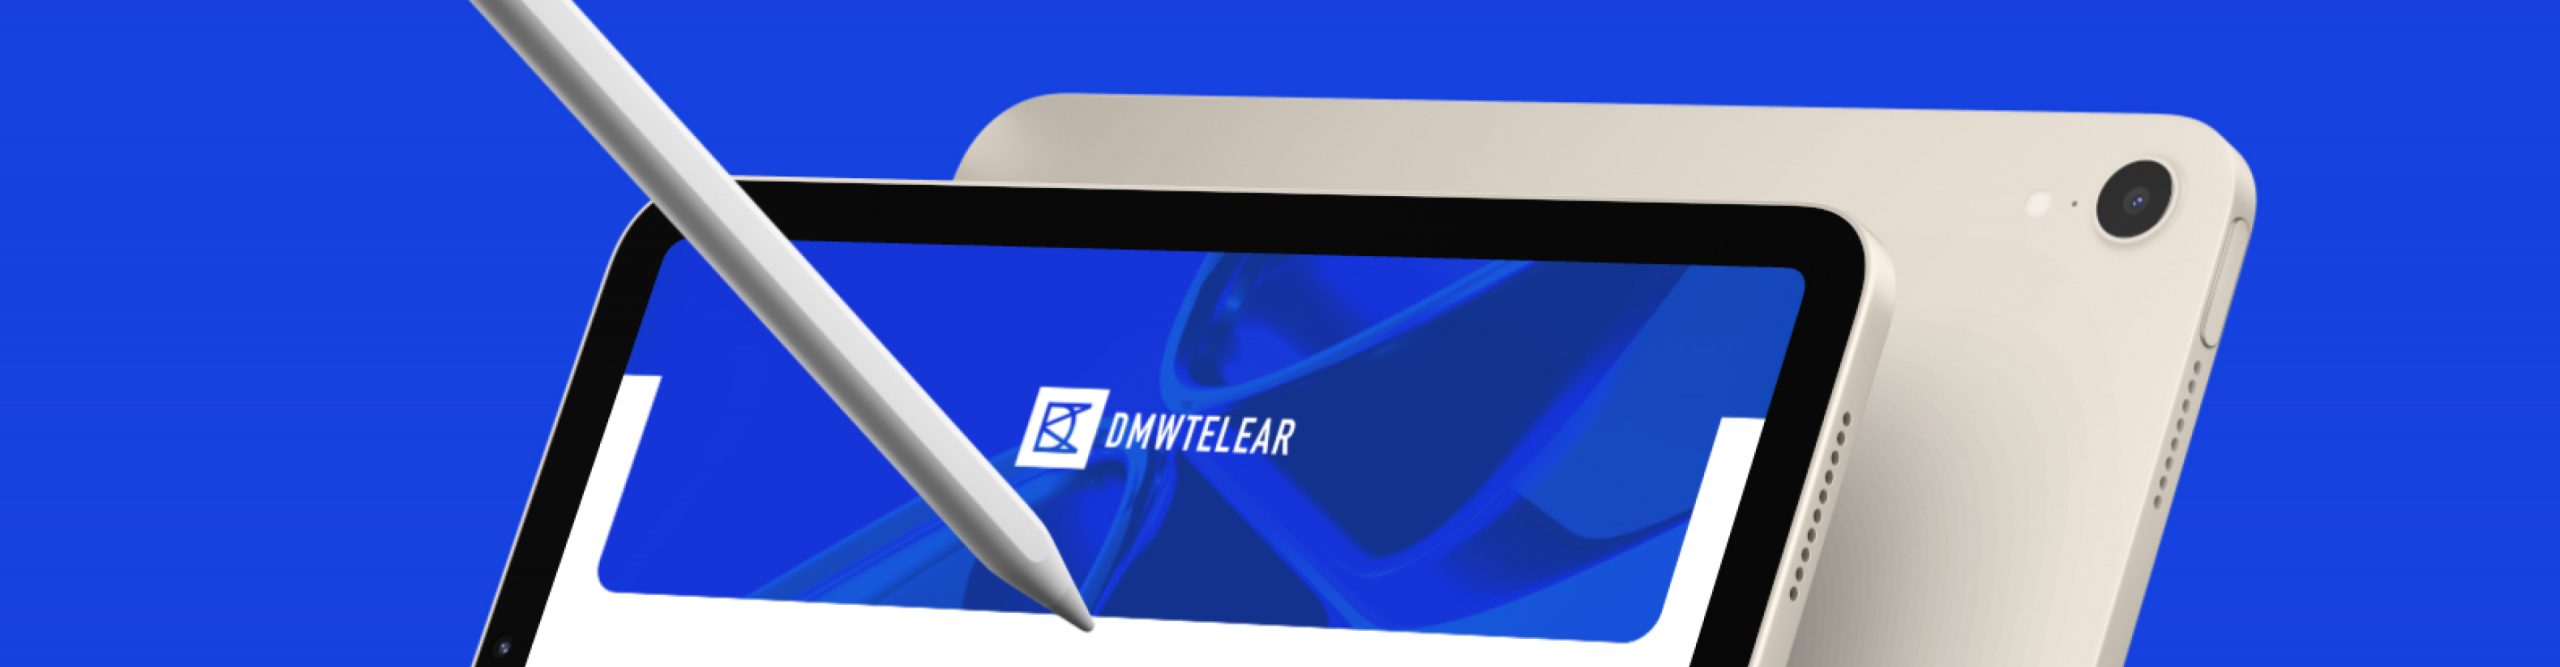 logo DMWTeleAR in bianco e blu su sfondo blu all'interno di un tablet 